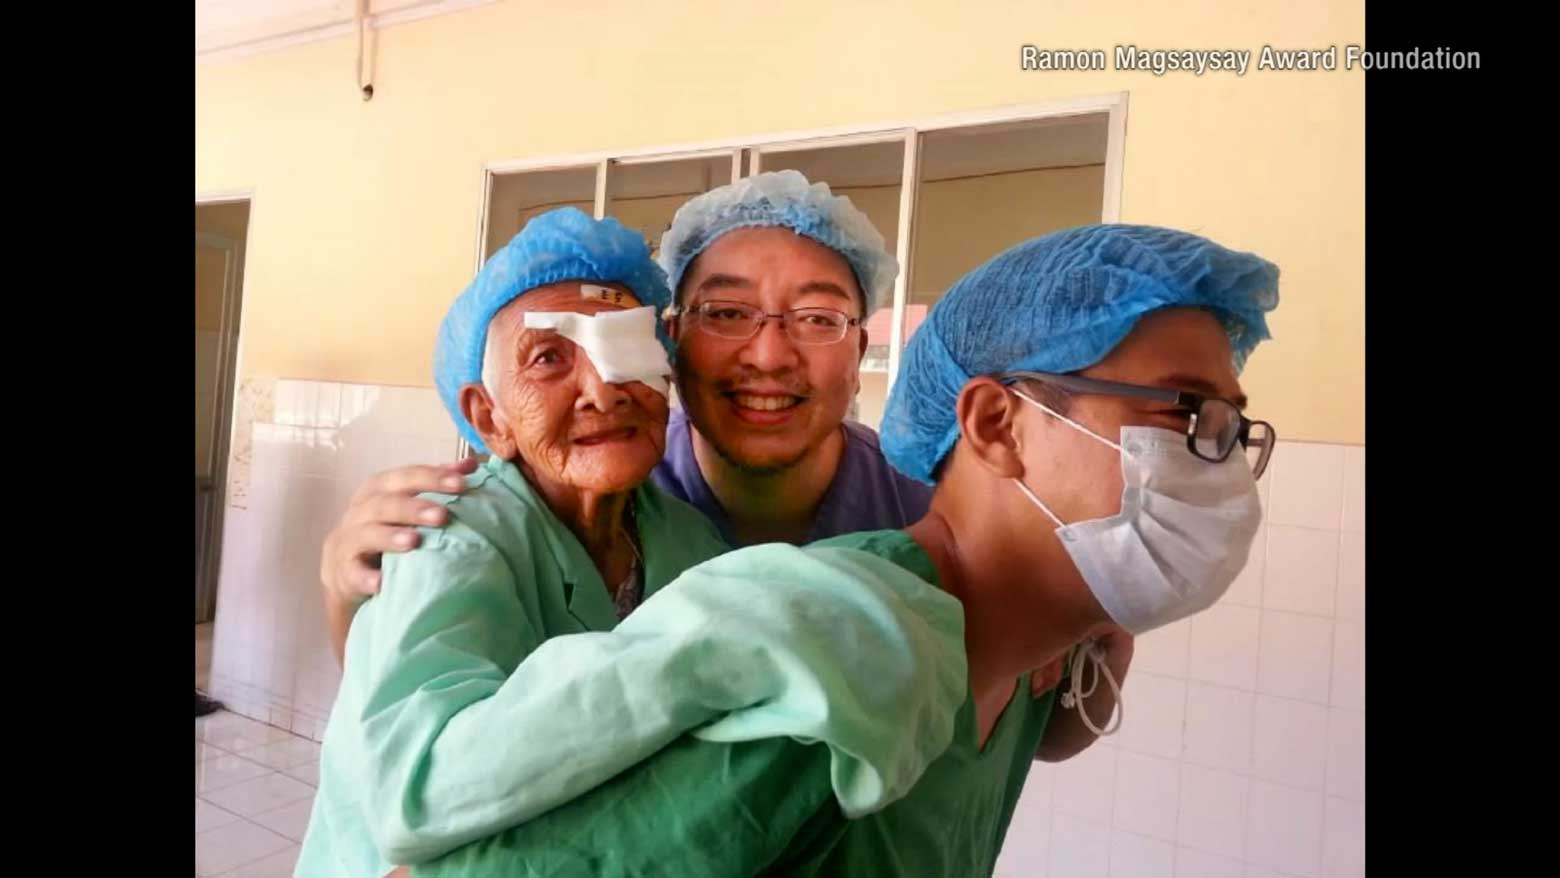 Sống vì người khác - Chìa khóa hạnh phúc của bác sỹ người Nhật được trao giải "Nobel châu Á"